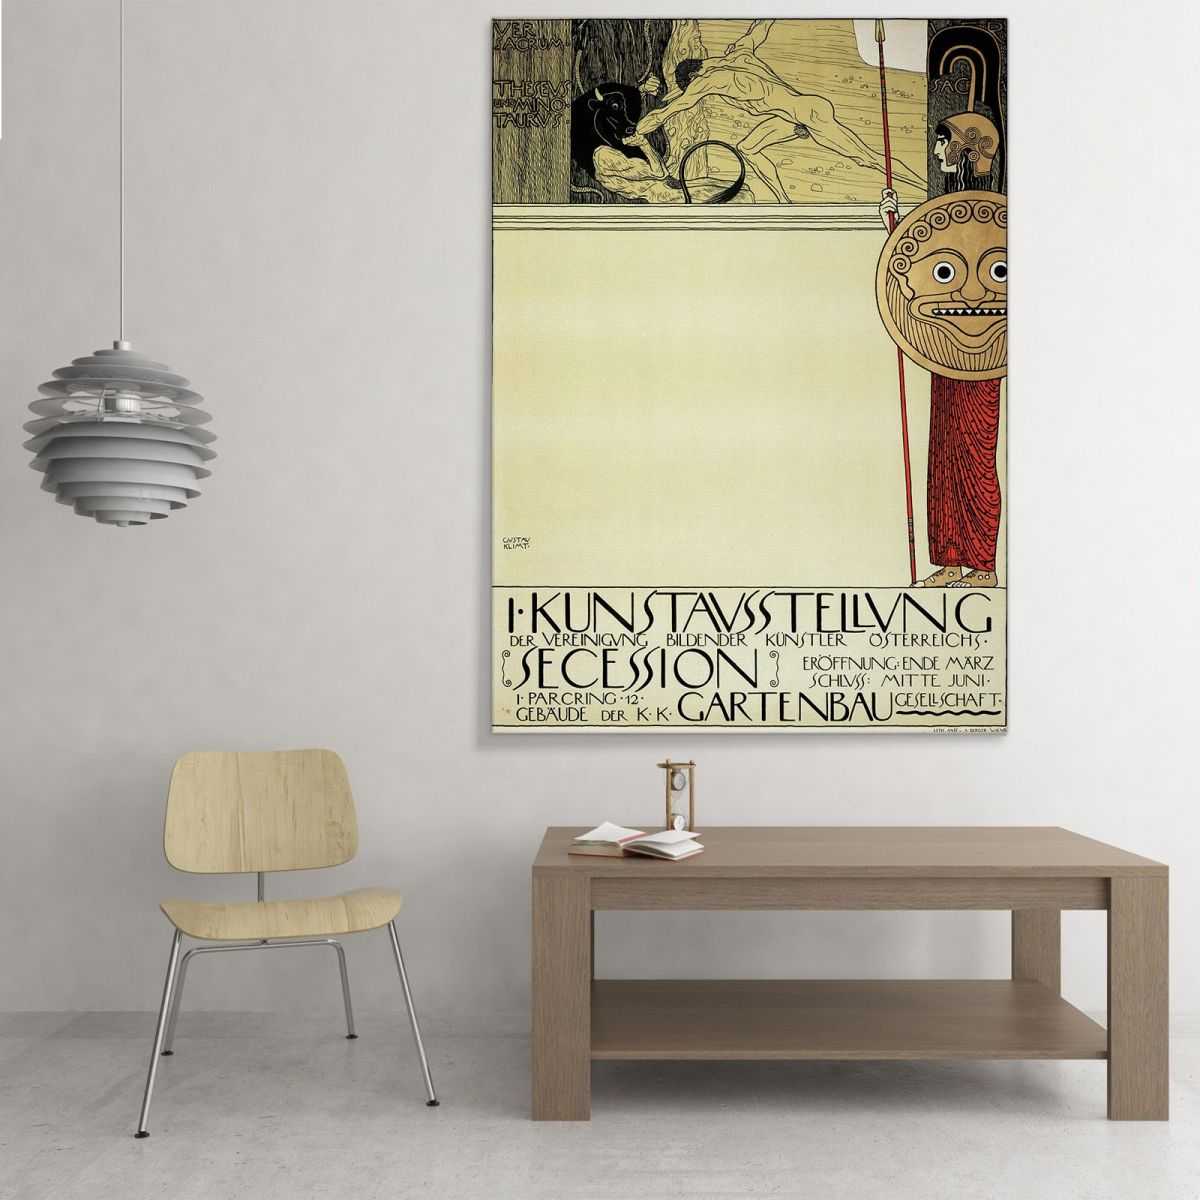 ภาพแคนวาส ตกแต่งบ้าน กรอบลอย Gustav Klimt Poster For The First Art Exhibition Of The Secession Movement KG51